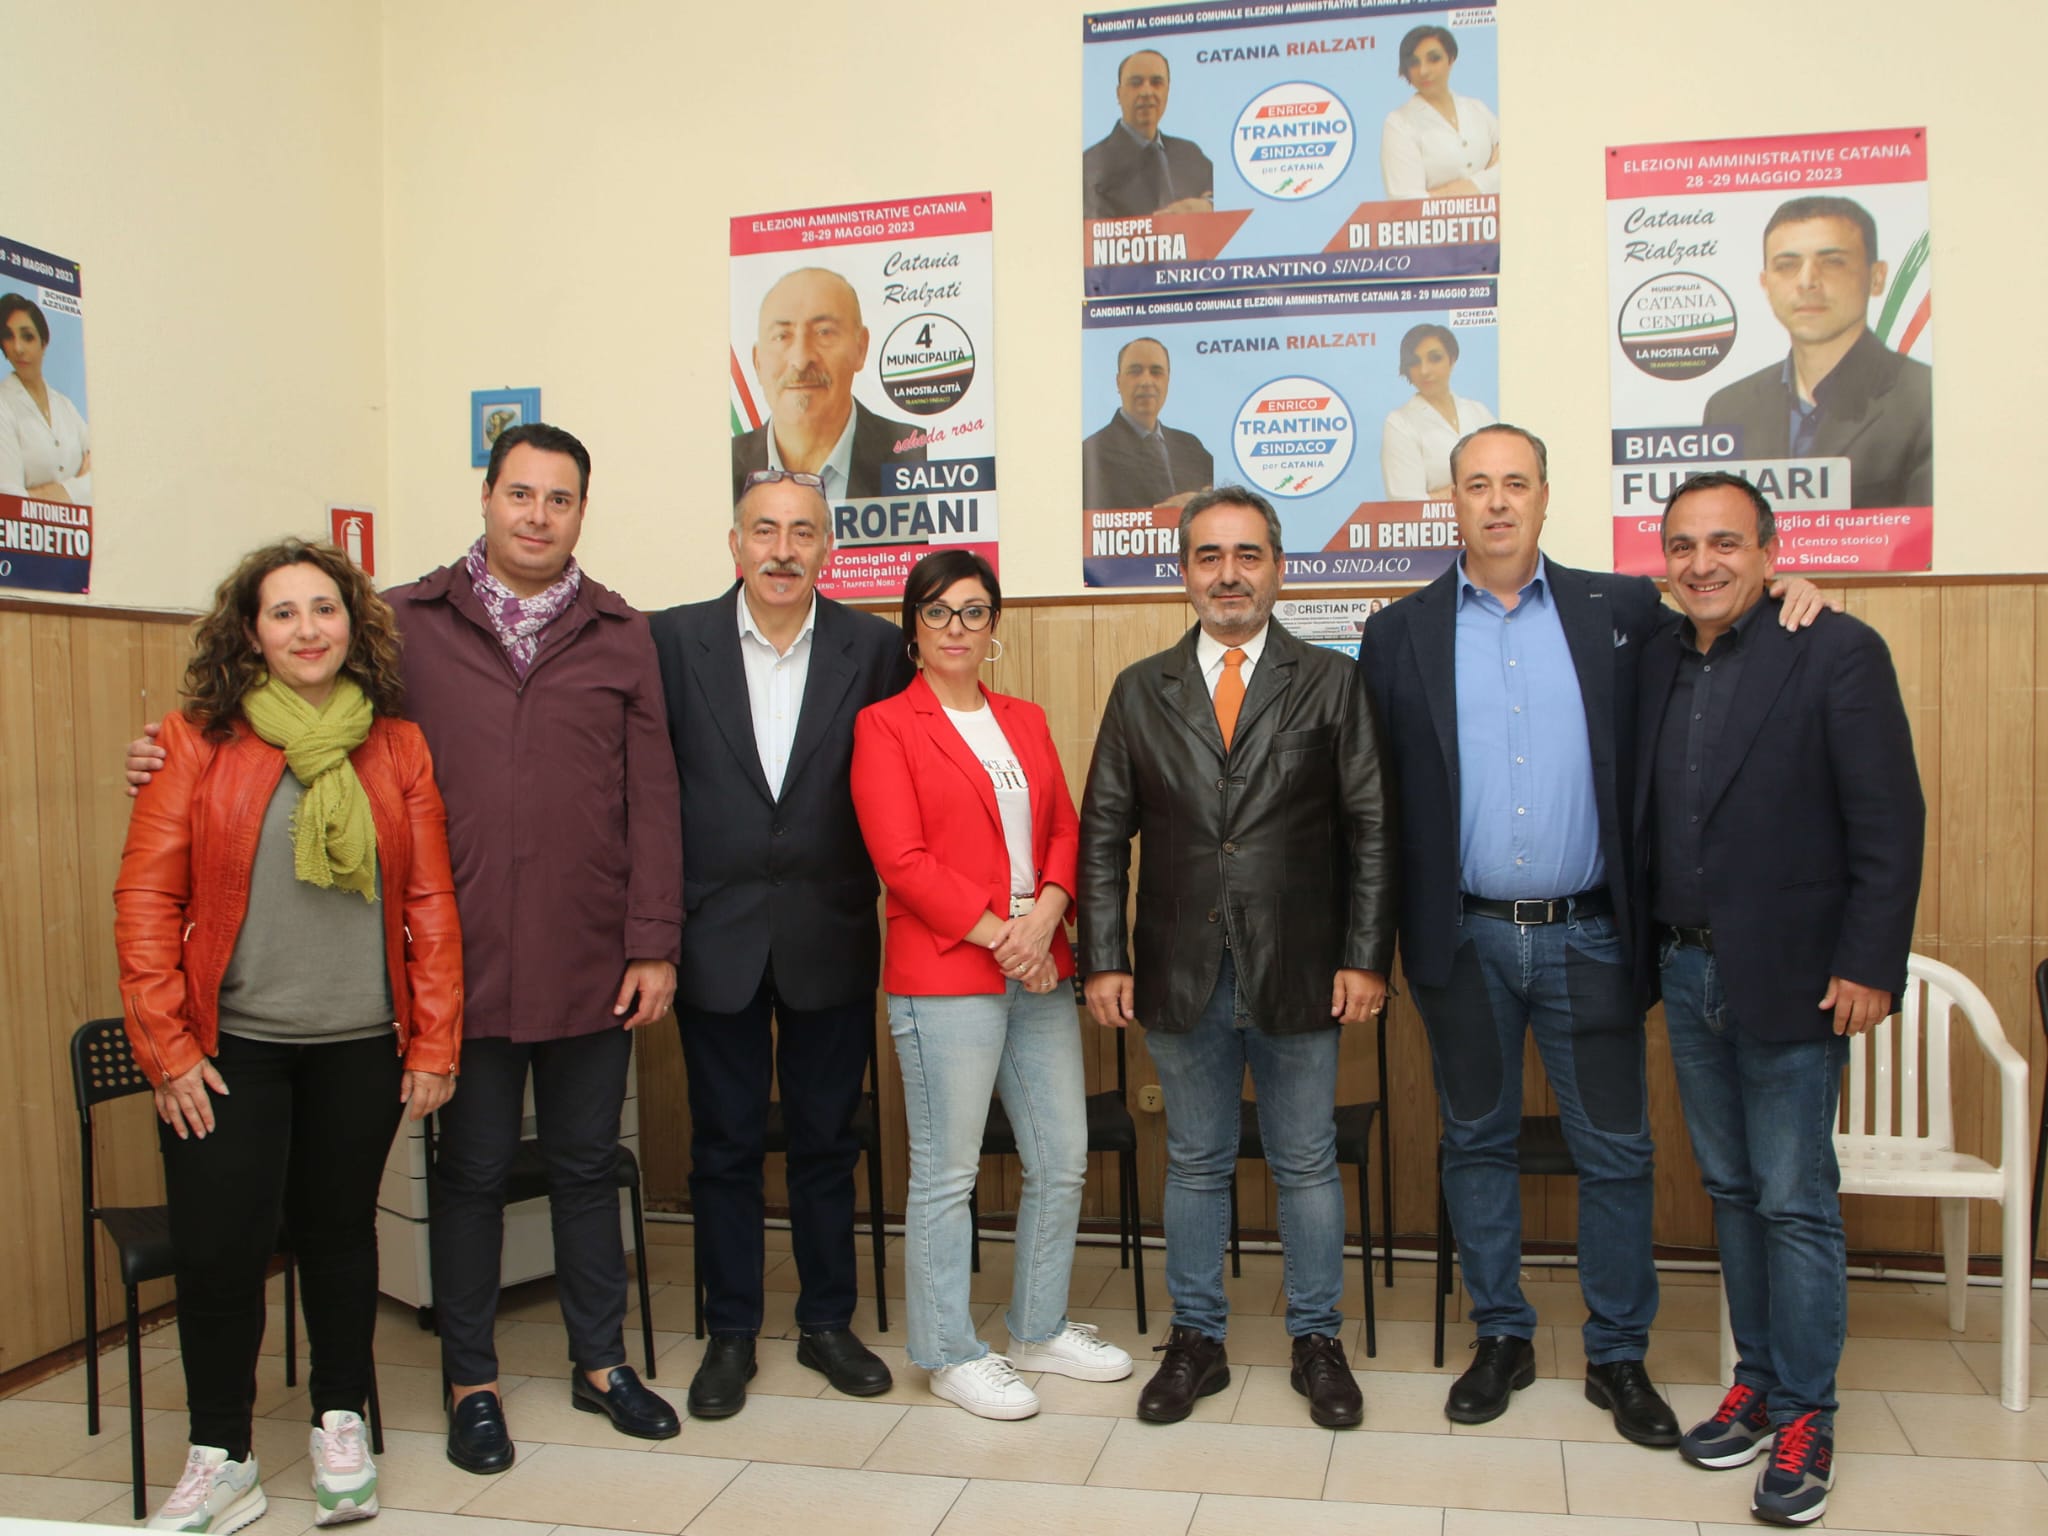 <strong>Presentazione dei candidati al consiglio comunale del comitato civico “Catania Rialzati”</strong>